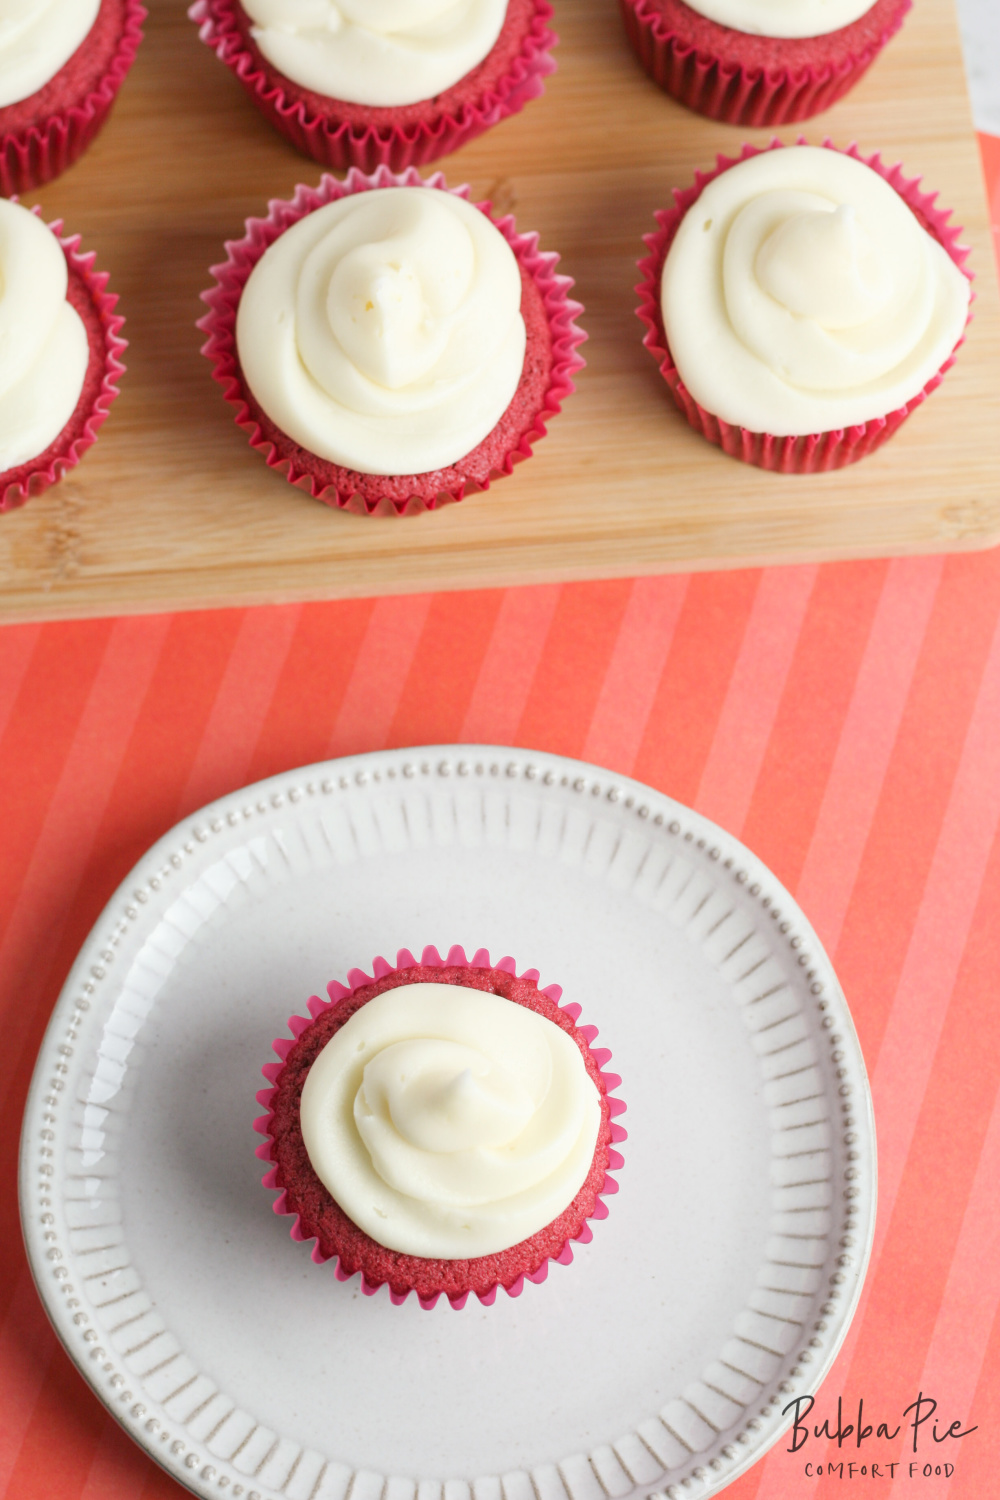 moist red velvet cupcakes recipe is completely gluten free!